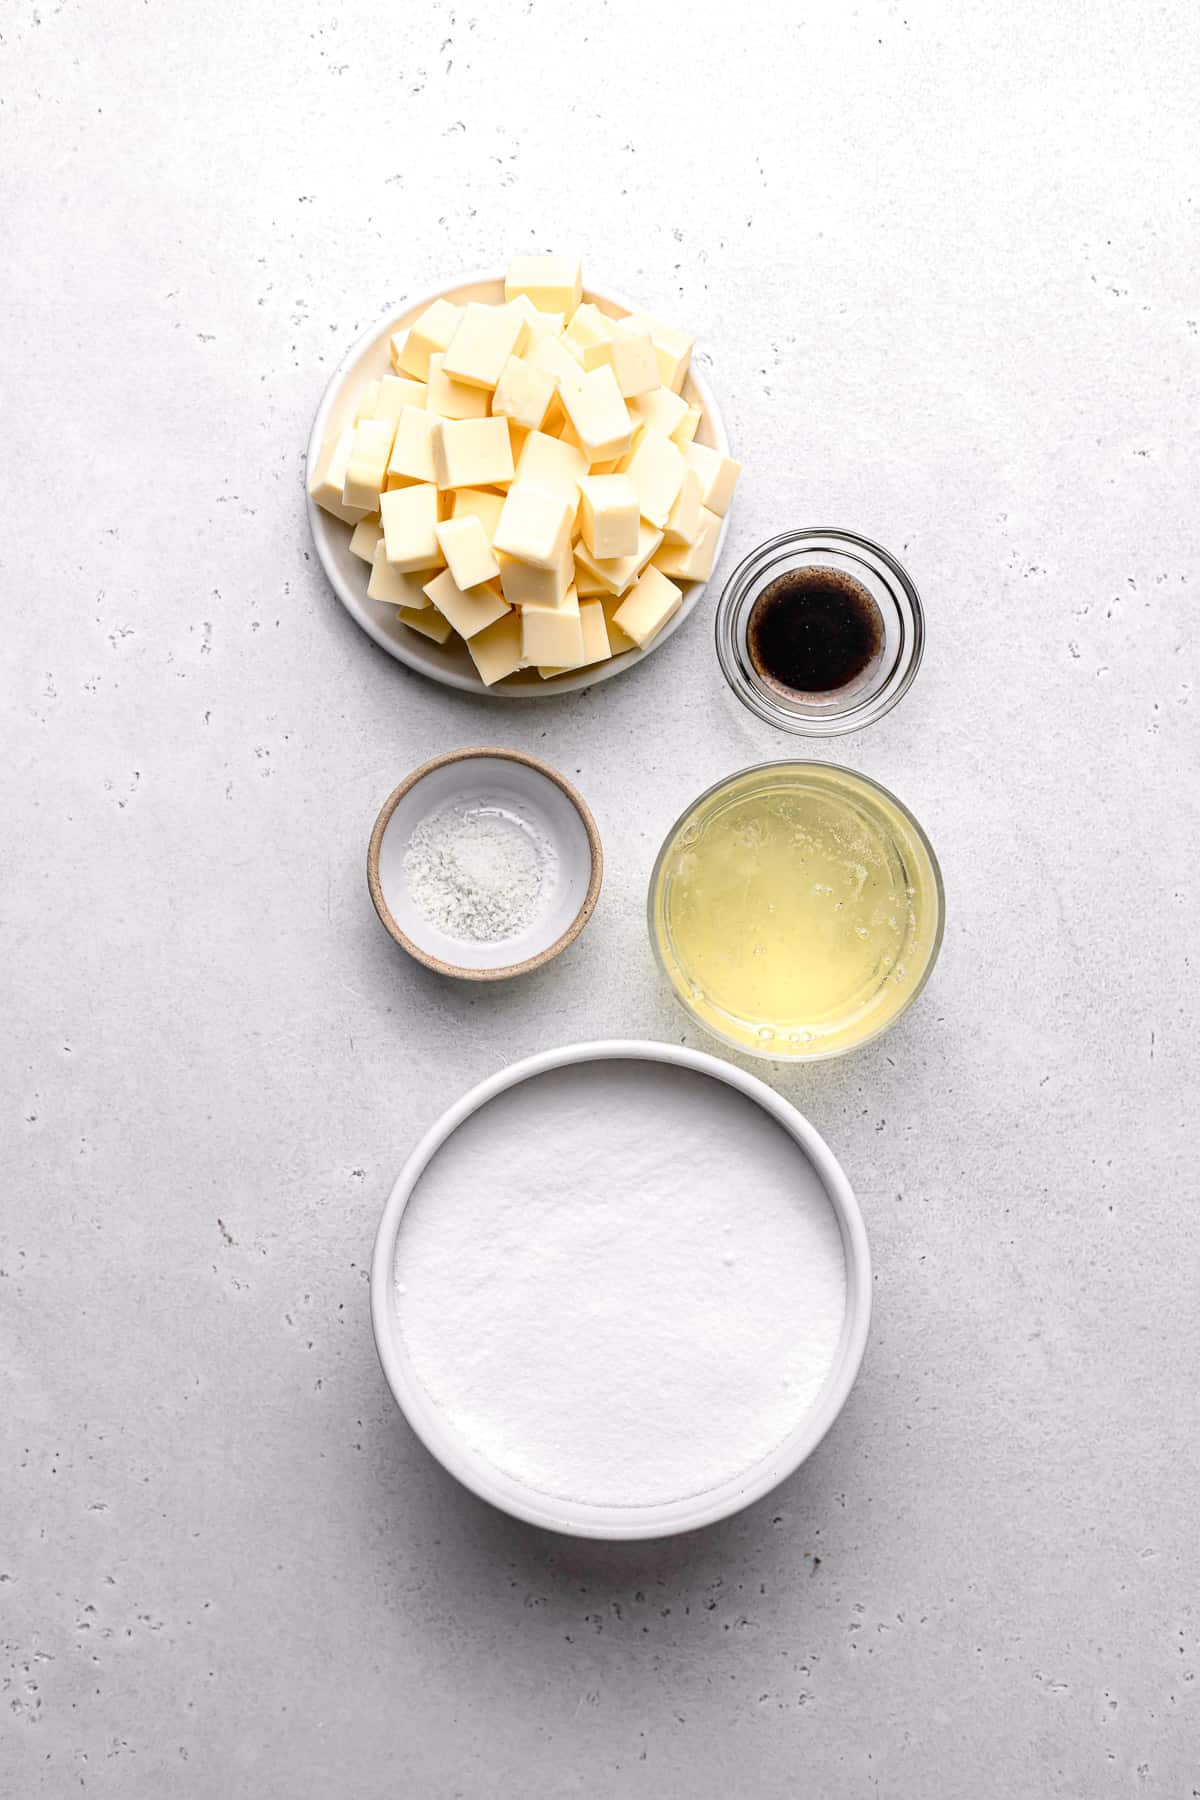 ingredients for swiss meringue buttercream